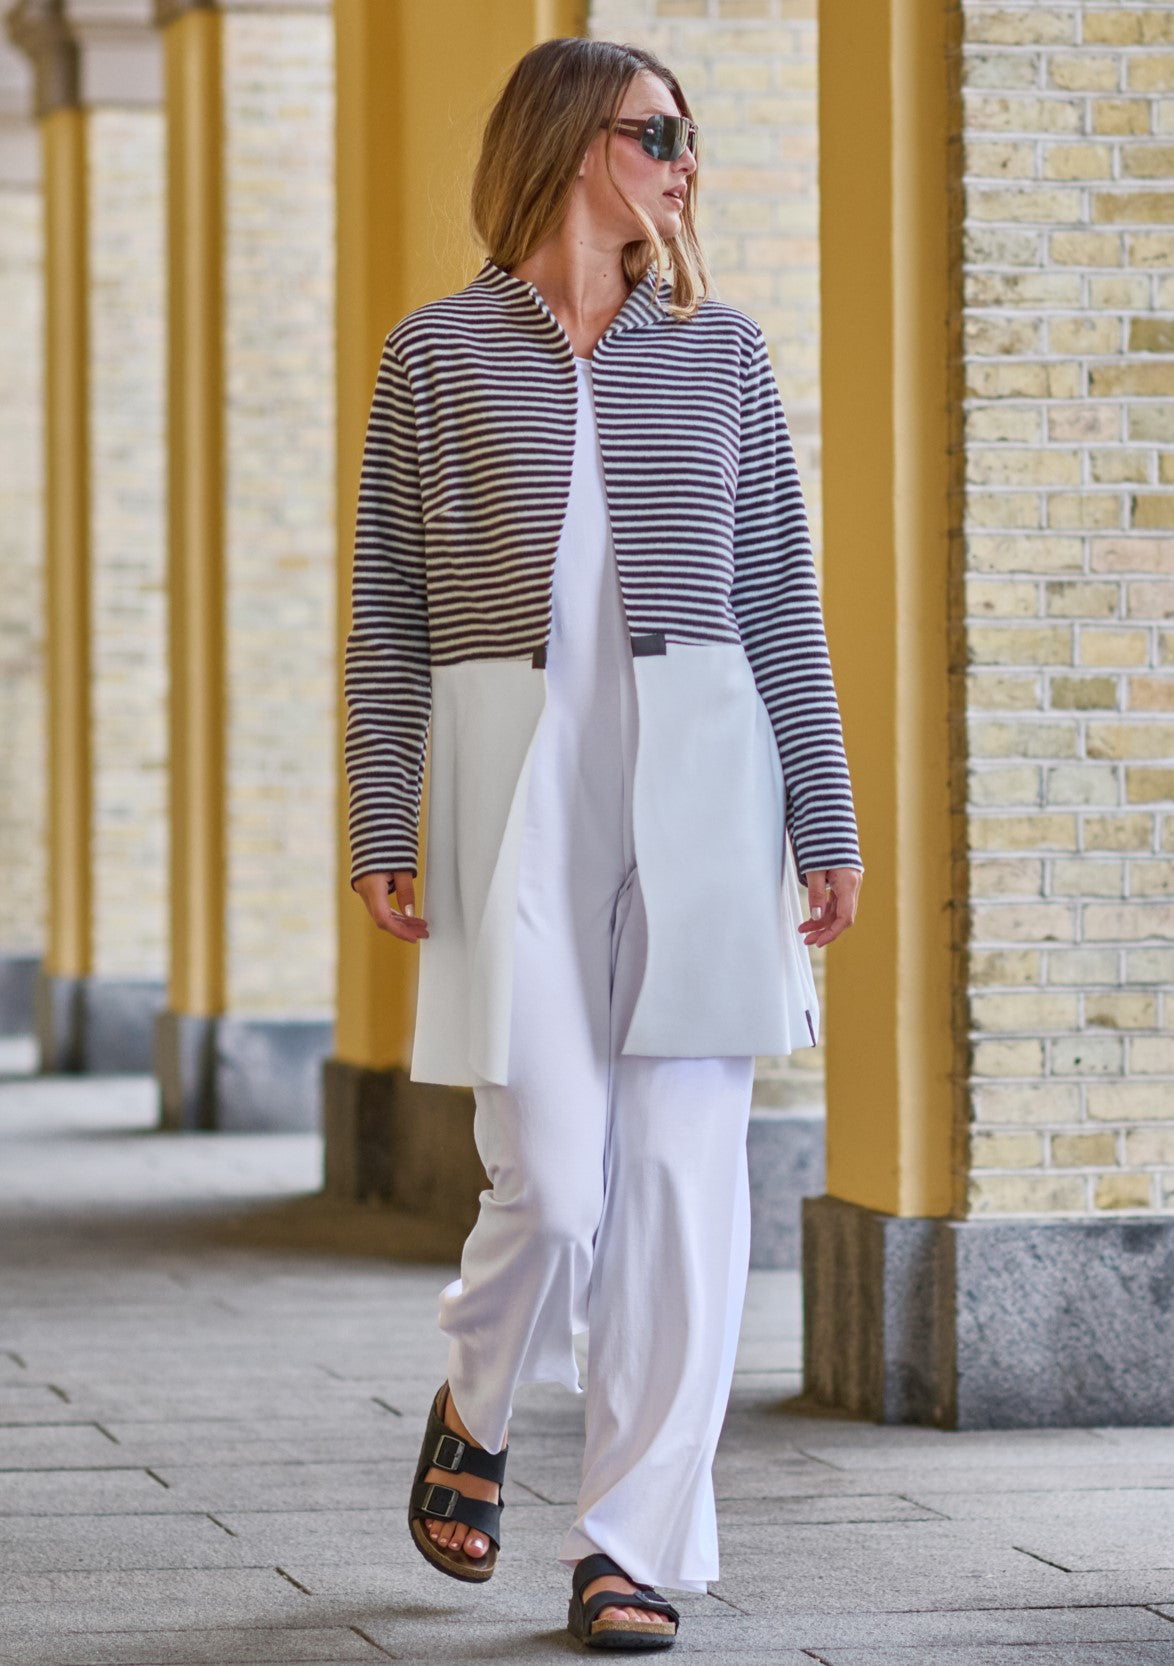 Henriette Steffensen Long Fleece Skirt Soft Black – Fashion House